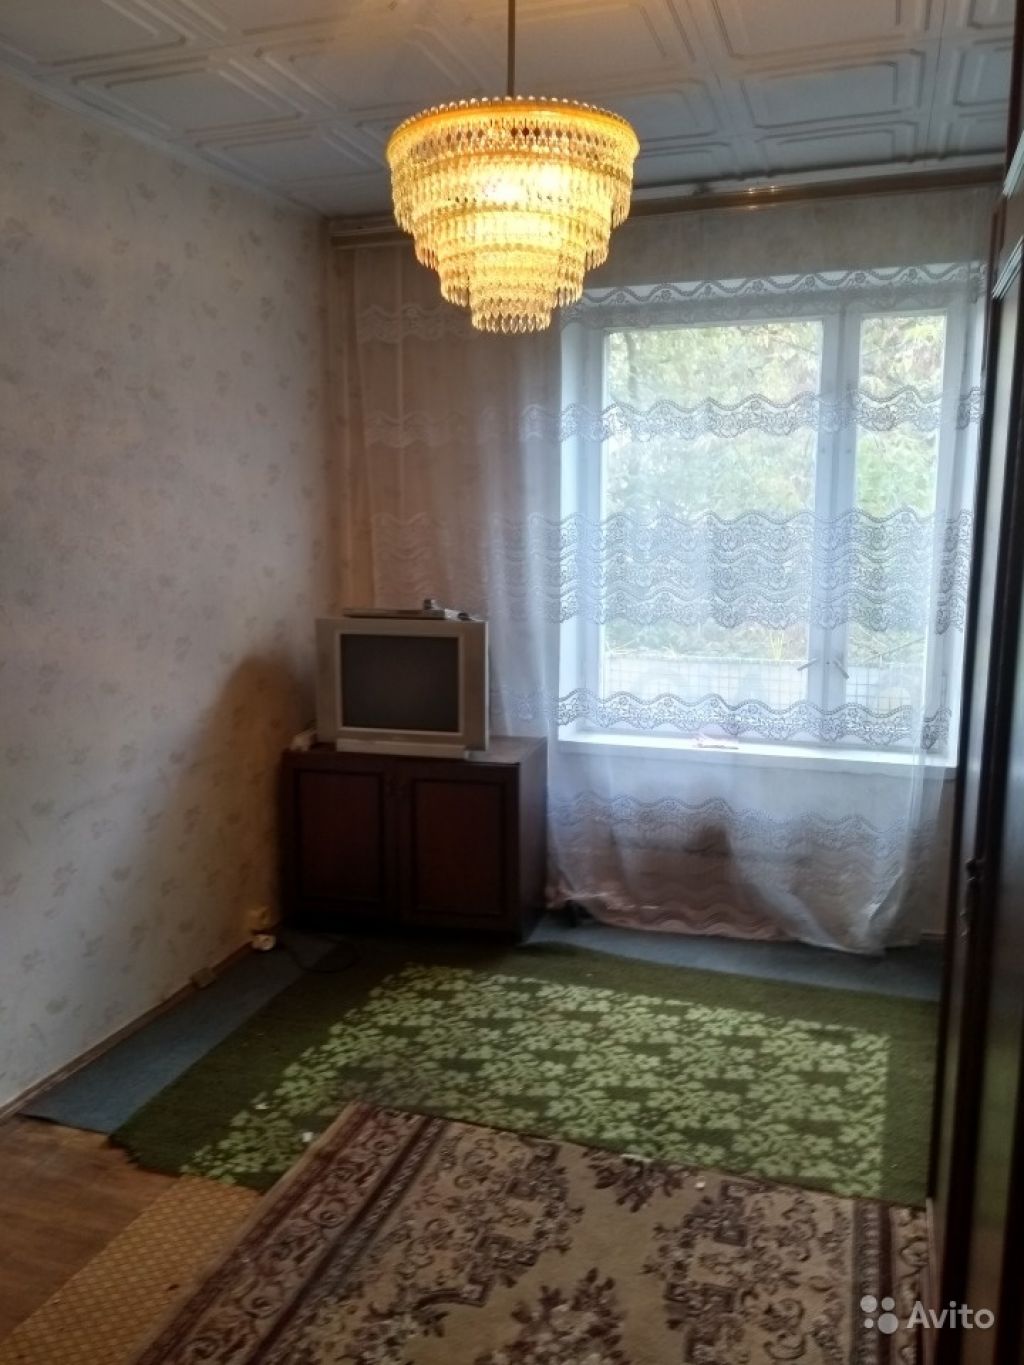 Продам комнату Комната 11 м² в 2-к квартире на 4 этаже 9-этажного панельного дома в Москве. Фото 1